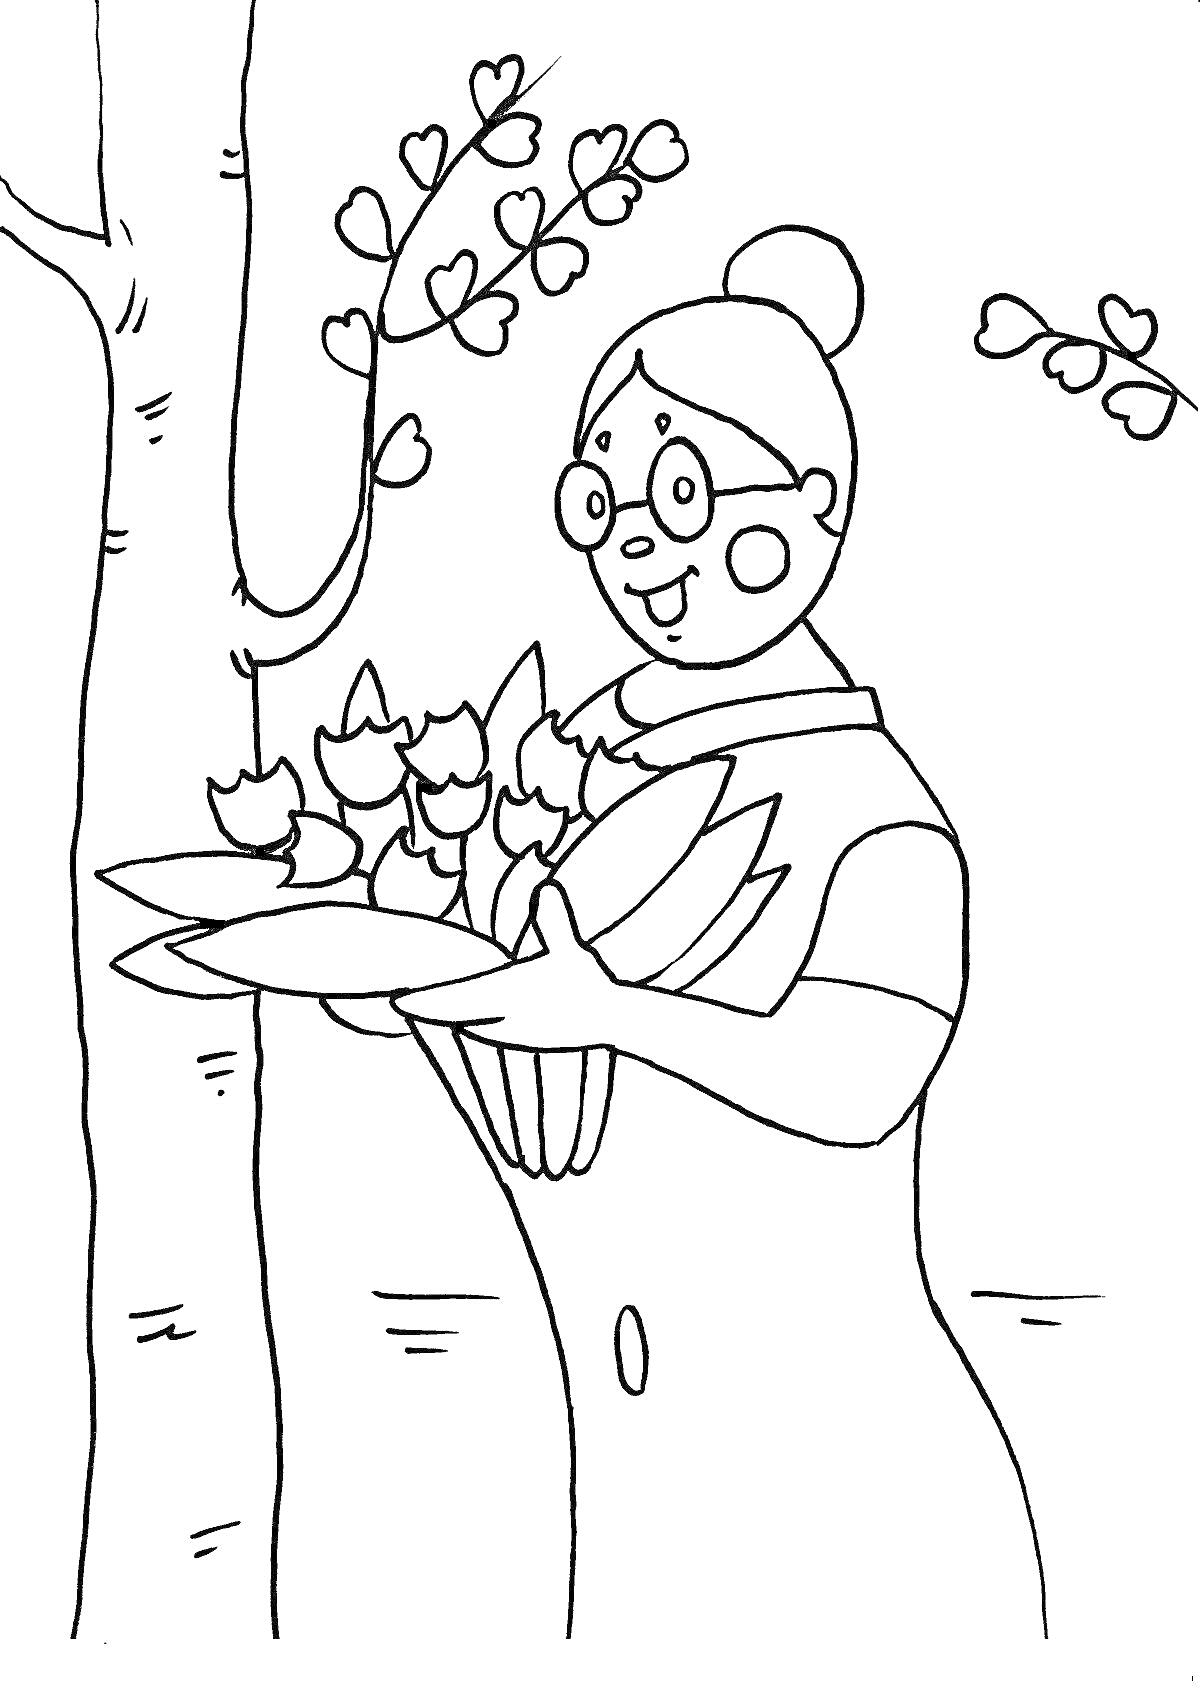 Раскраска женщина в очках, с пучком на голове, держащая букет цветов, на фоне дерево с ветвями и листьями